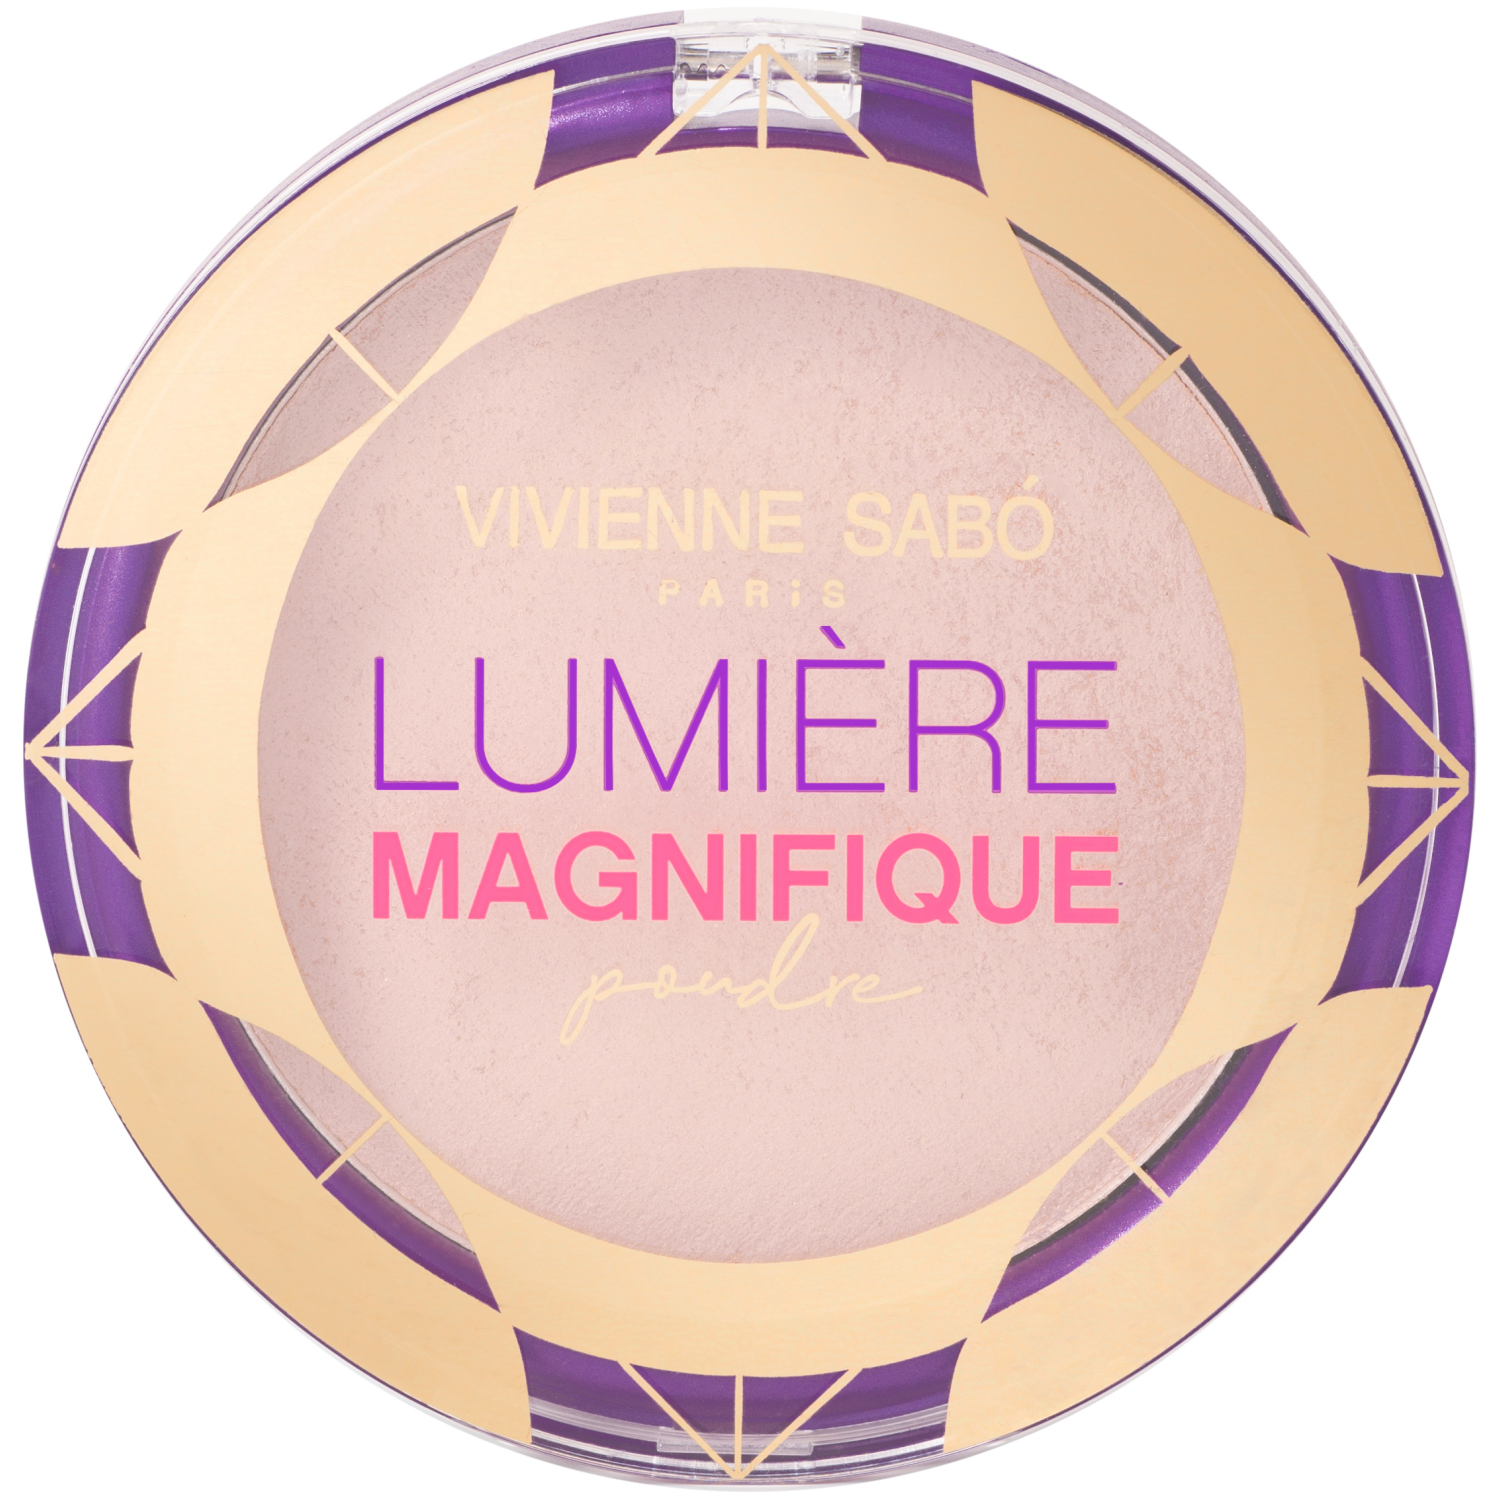 Пудра Vivienne Sabo Lumiere Magnifique, сияющая, бархатистая текстура, эффект мягкого фокуса, тон 02, бежевый, 6гр. кисть косметическая 2 для тональной основы синтетический ворс